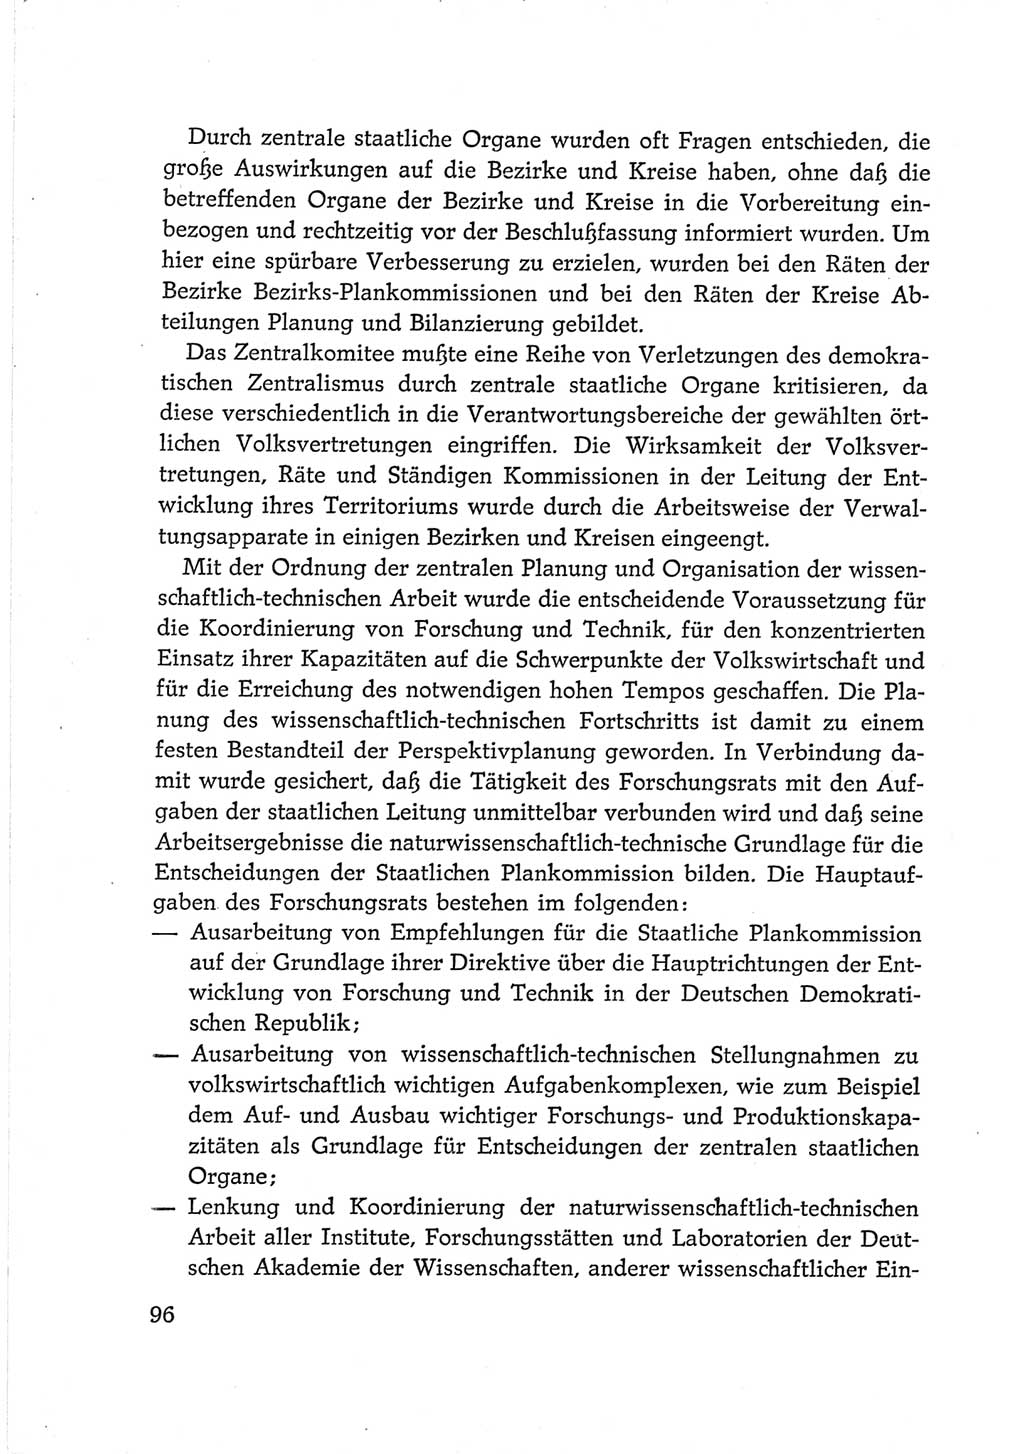 Protokoll der Verhandlungen des Ⅵ. Parteitages der Sozialistischen Einheitspartei Deutschlands (SED) [Deutsche Demokratische Republik (DDR)] 1963, Band Ⅳ, Seite 96 (Prot. Verh. Ⅵ. PT SED DDR 1963, Bd. Ⅳ, S. 96)